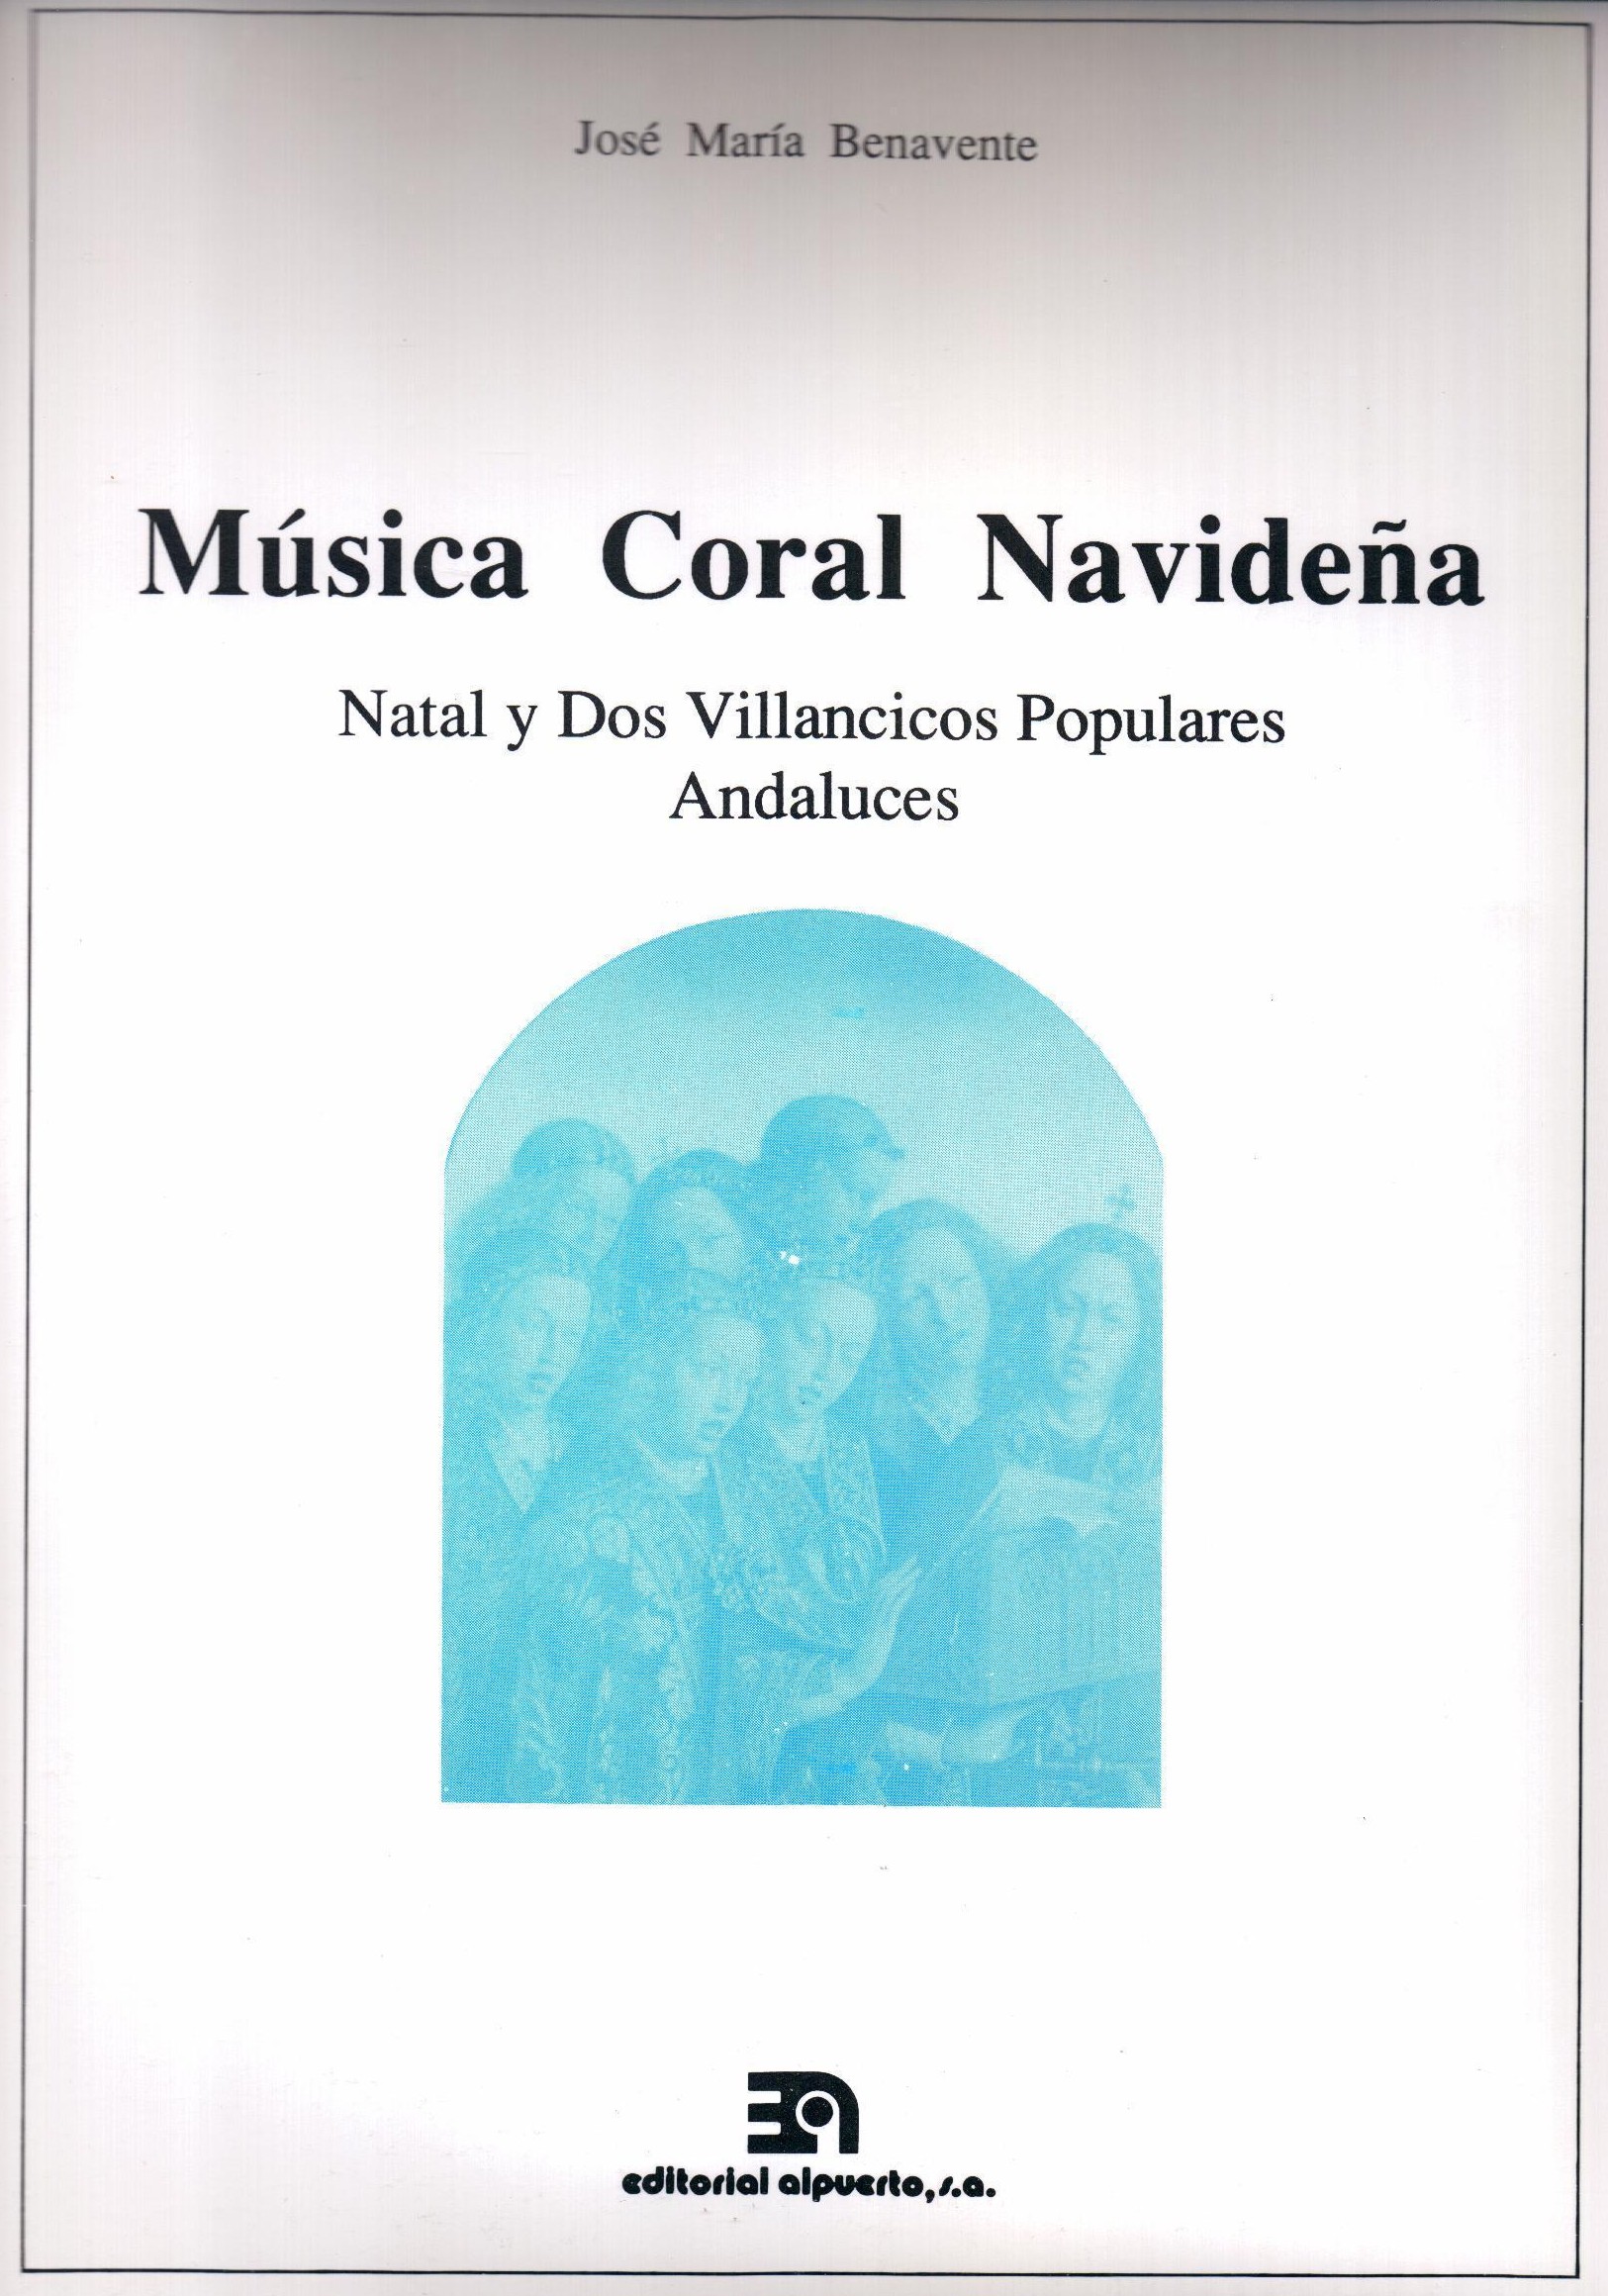 Música Coral Navideña
Natal y Dos Villancicos Populares Andaluces